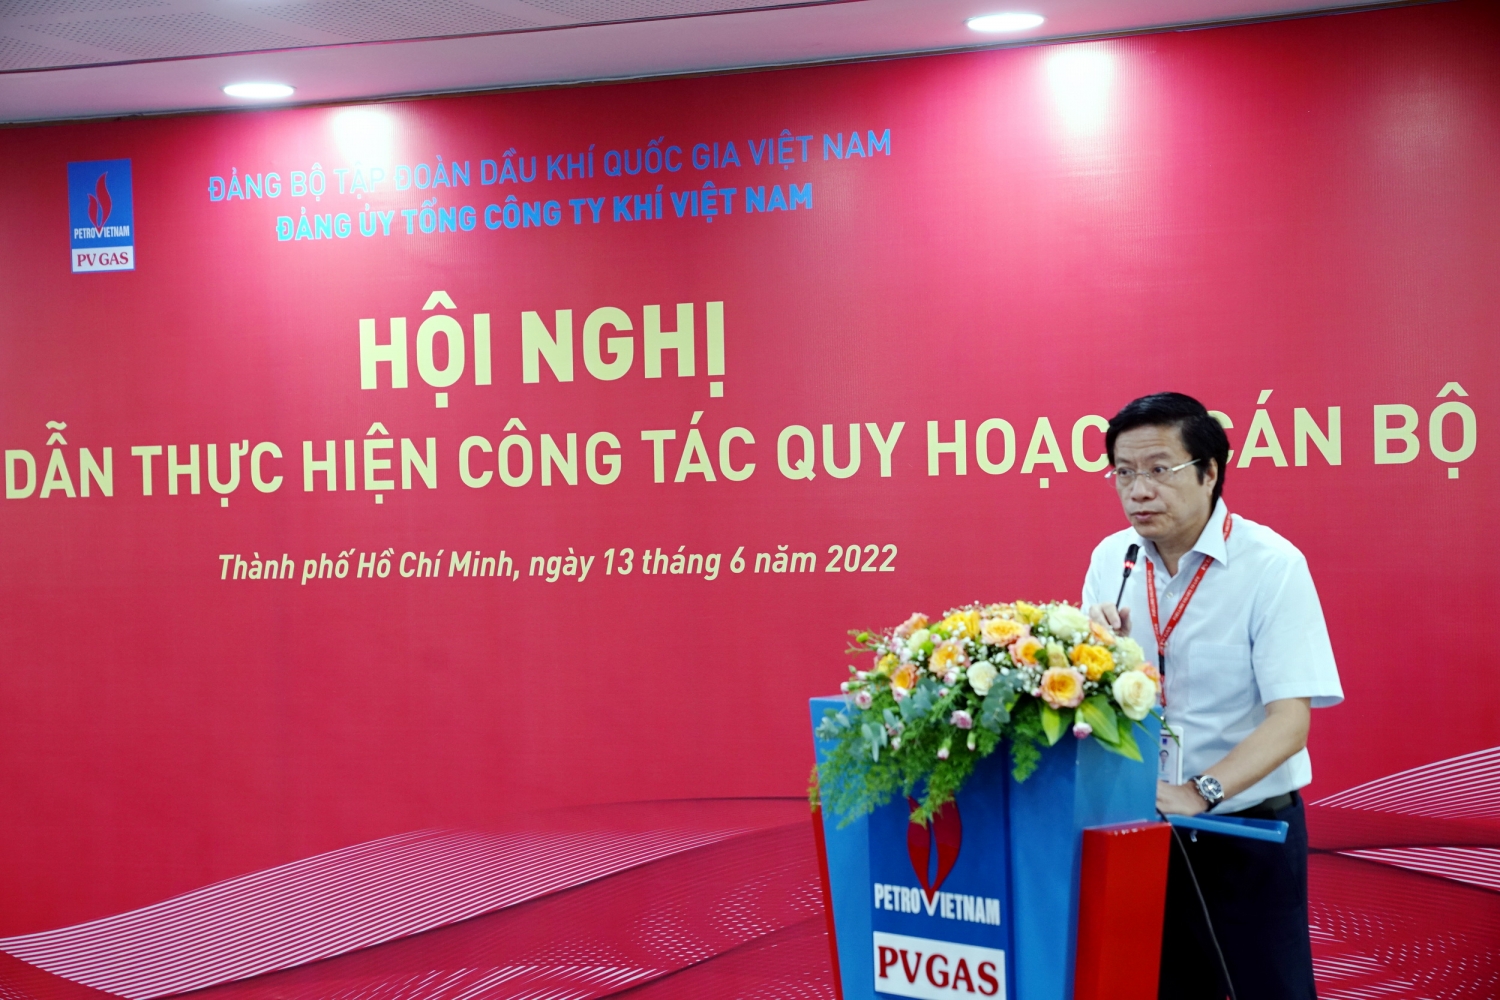 Đồng chí Phó Bí thư Đảng ủy PV GAS Trần Đức Sơn trình bày các nội dung chính của Hướng dẫn về công tác quy hoạch cán bộ